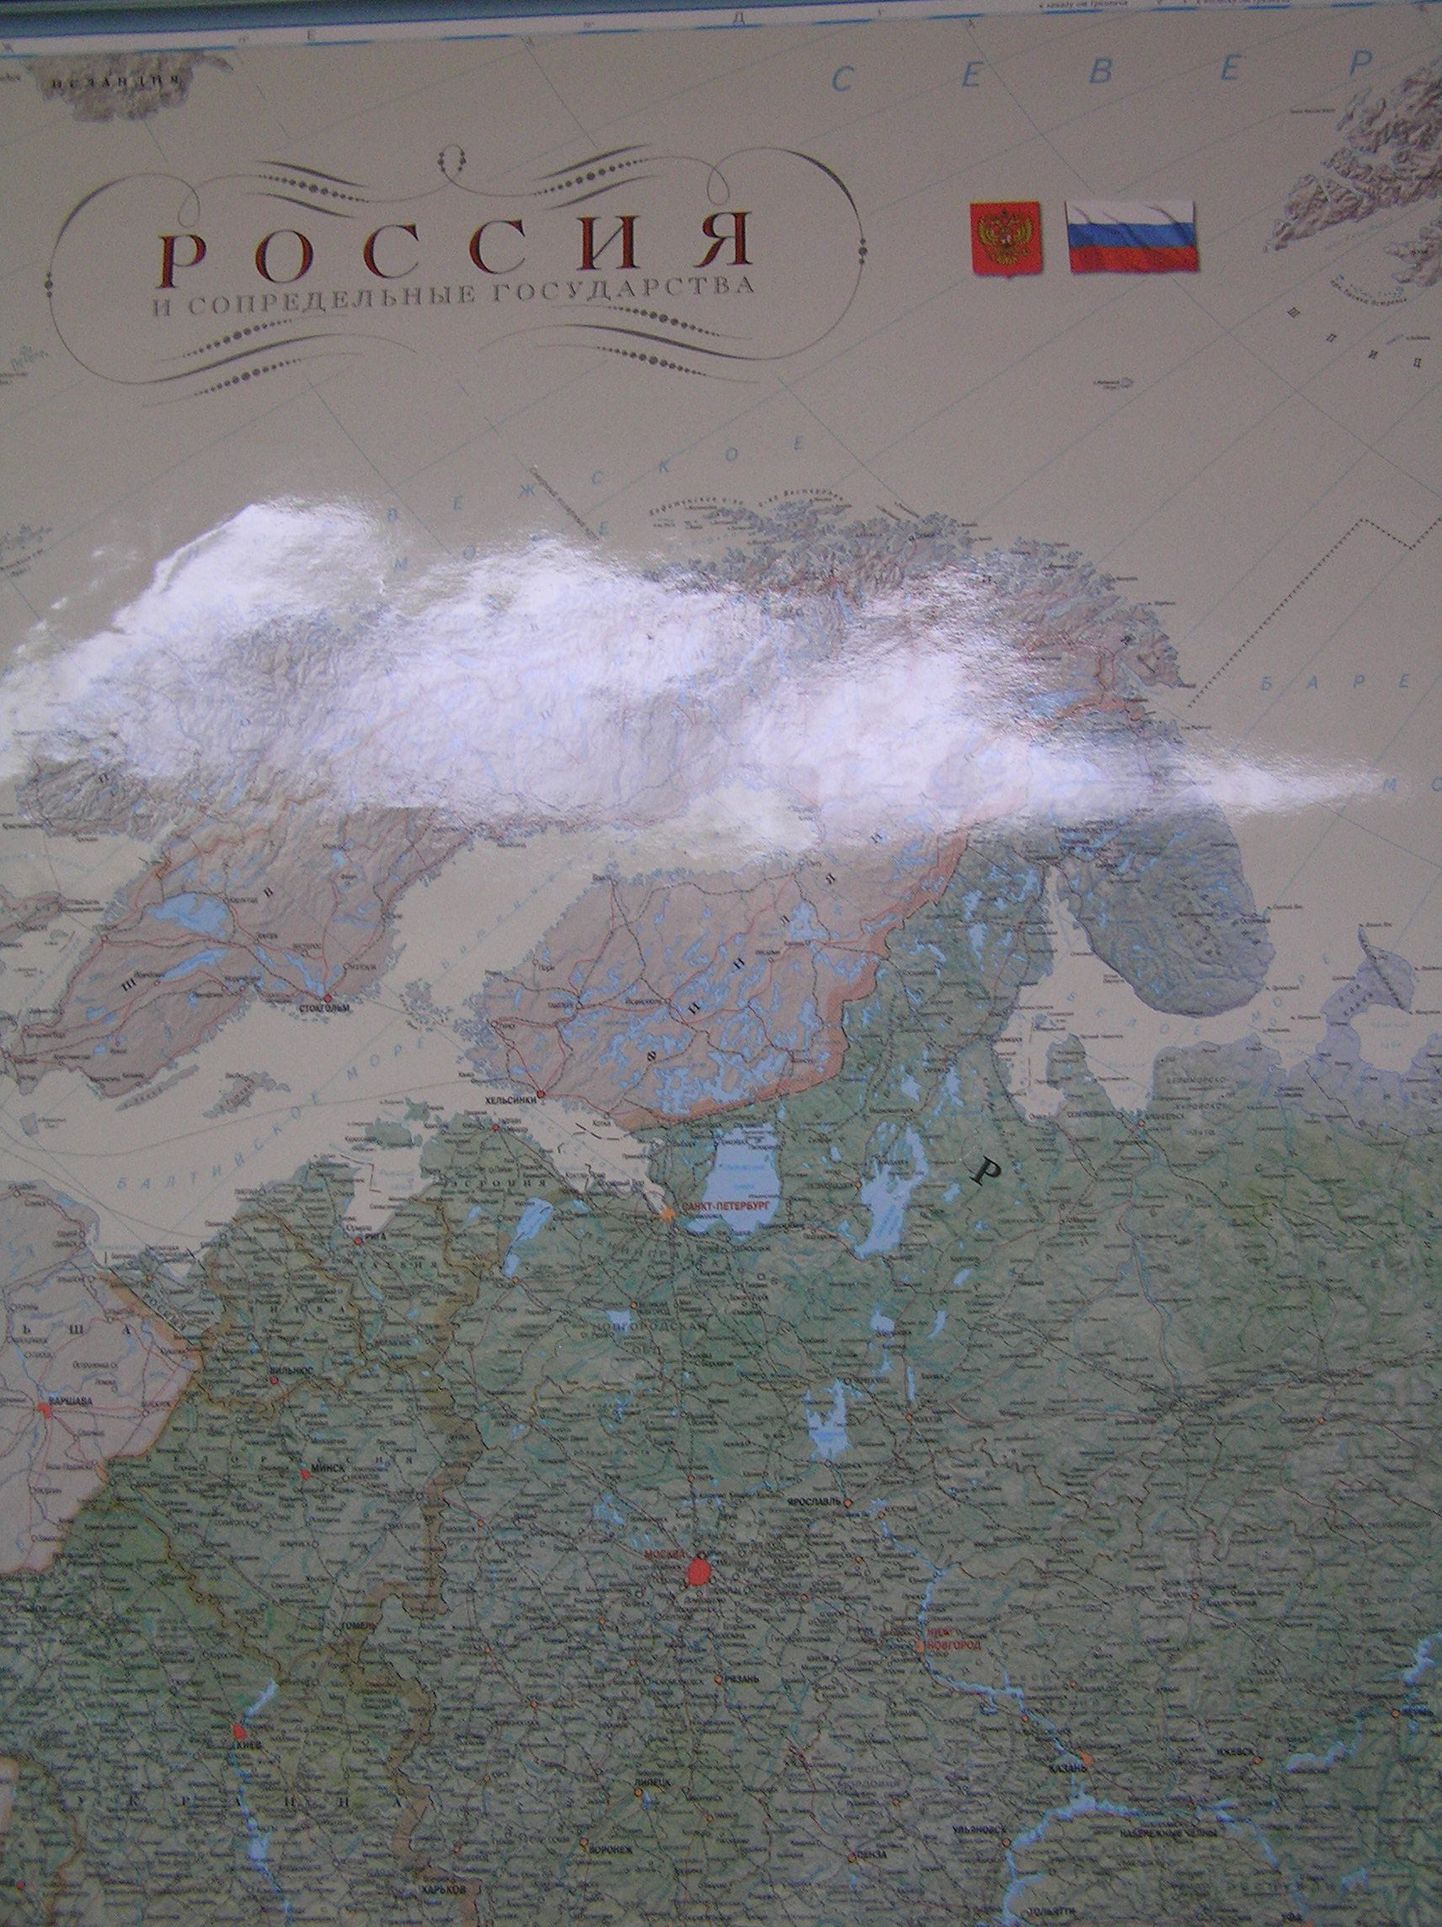 Venemaal trükitud kaart, mille kohaselt kuulub Eesti jätkuvalt idanaabri koosseisu.